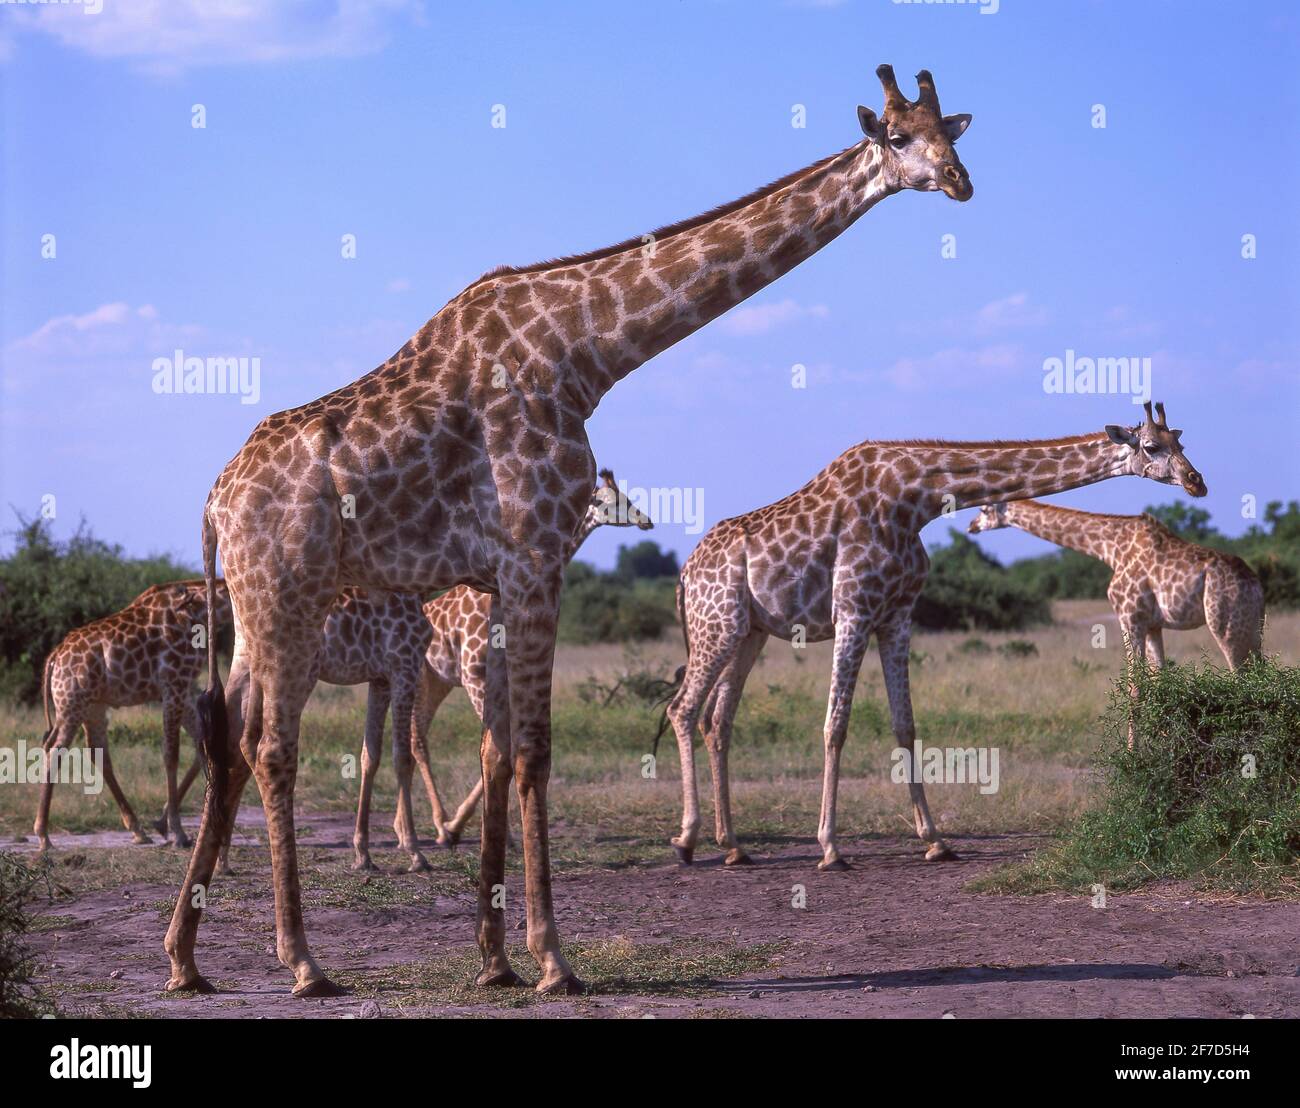 Le giraffe nel bush, Chobe National Park - Chobe, Repubblica del Botswana Foto Stock